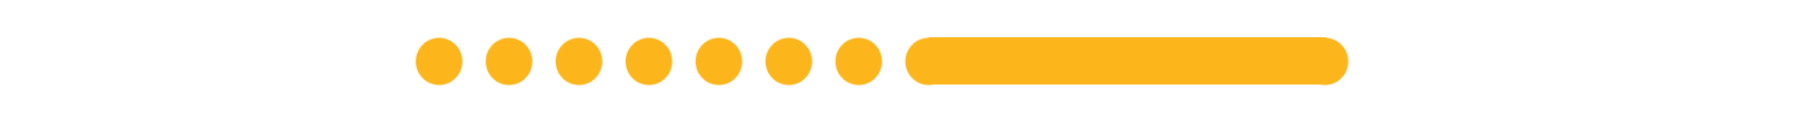 Sieben orangene Punkt und ein langer orangener Strich um einen General Alarm auf einem Schiff zu symbolisieren